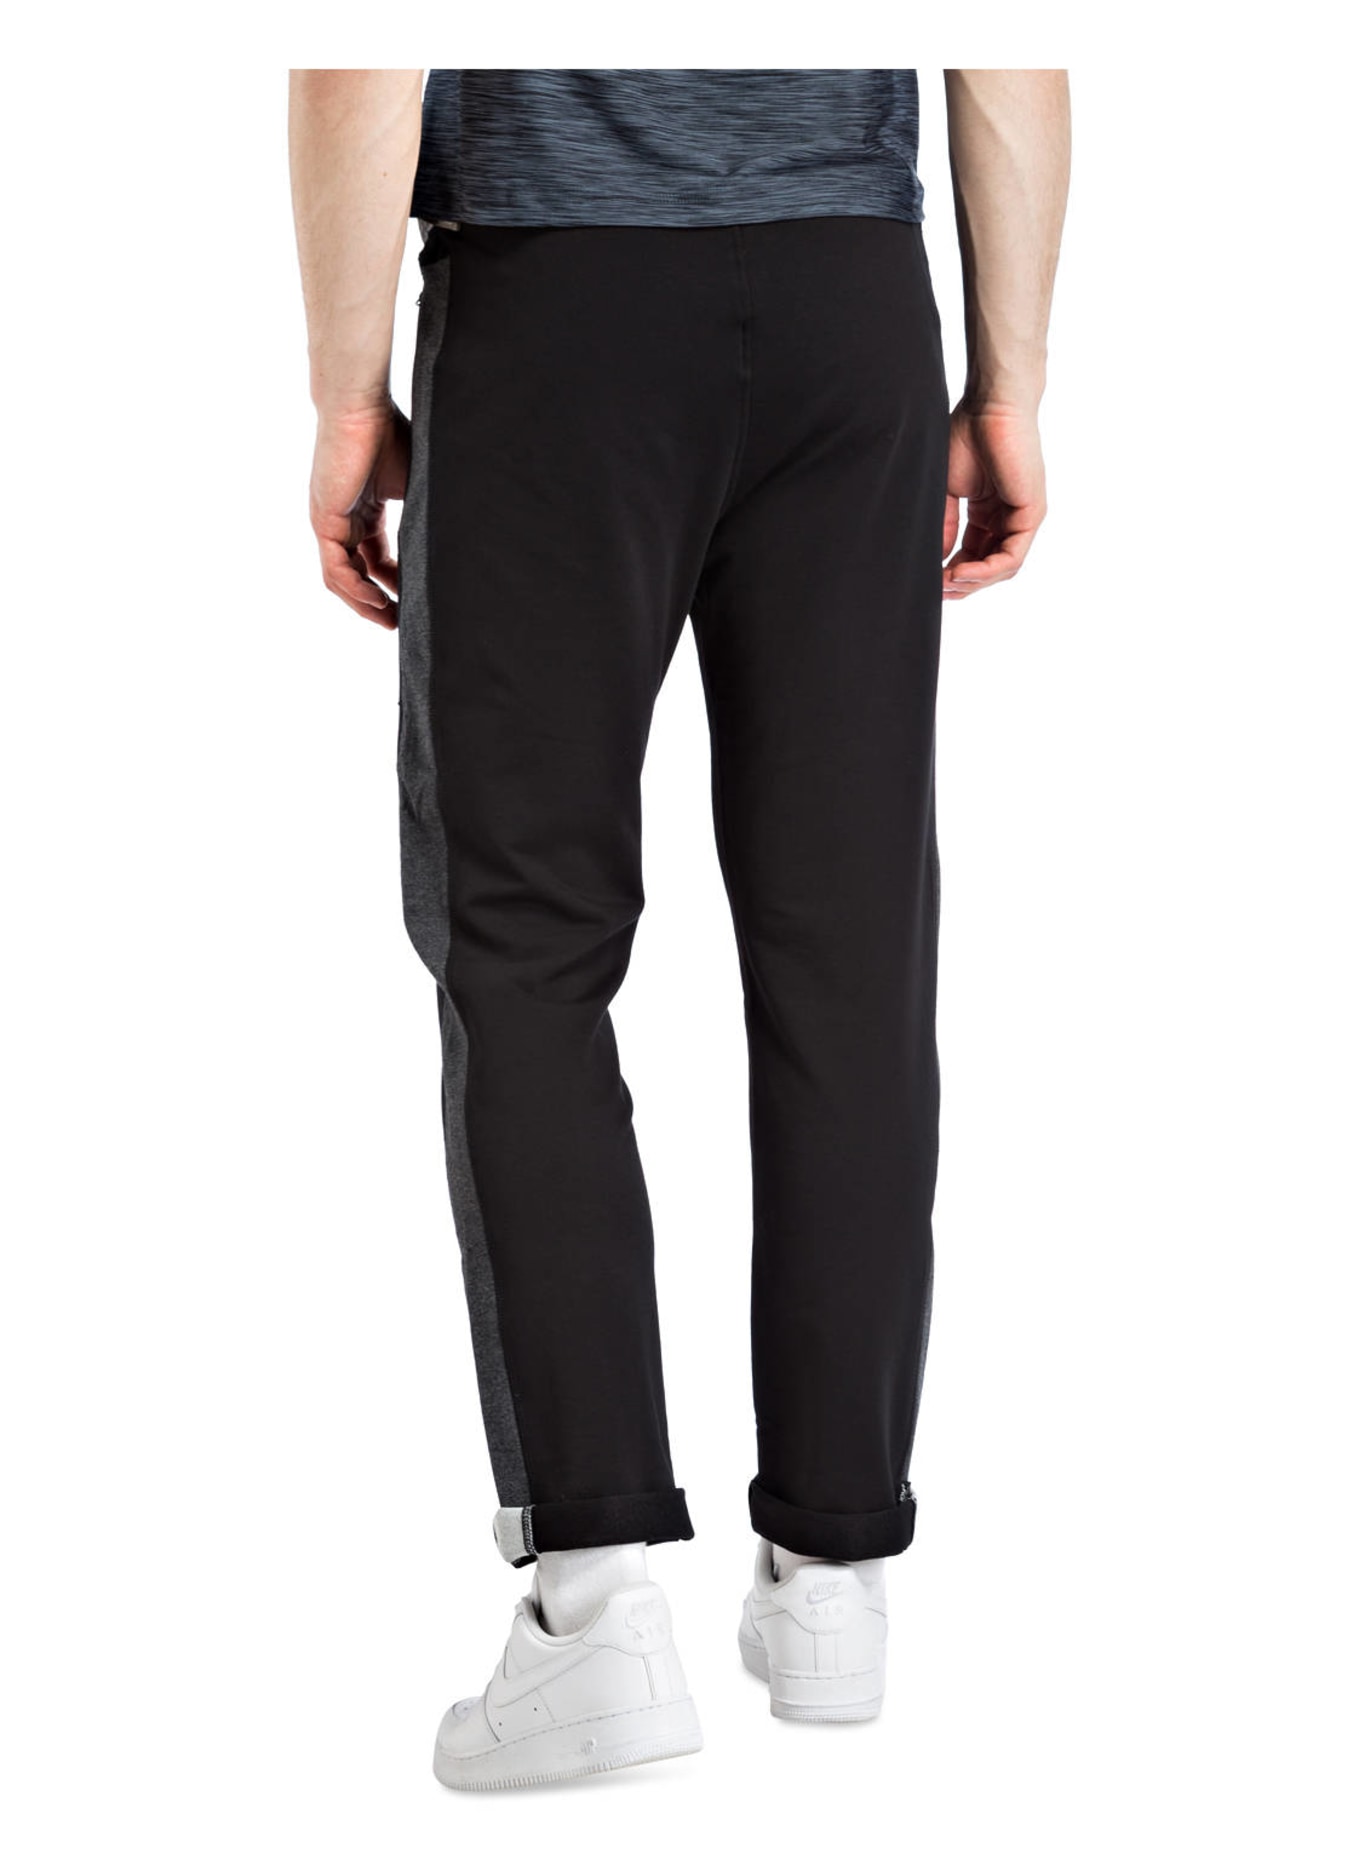 JOY sportswear Sweatpants FERNANDO, Farbe: SCHWARZ (Bild 3)